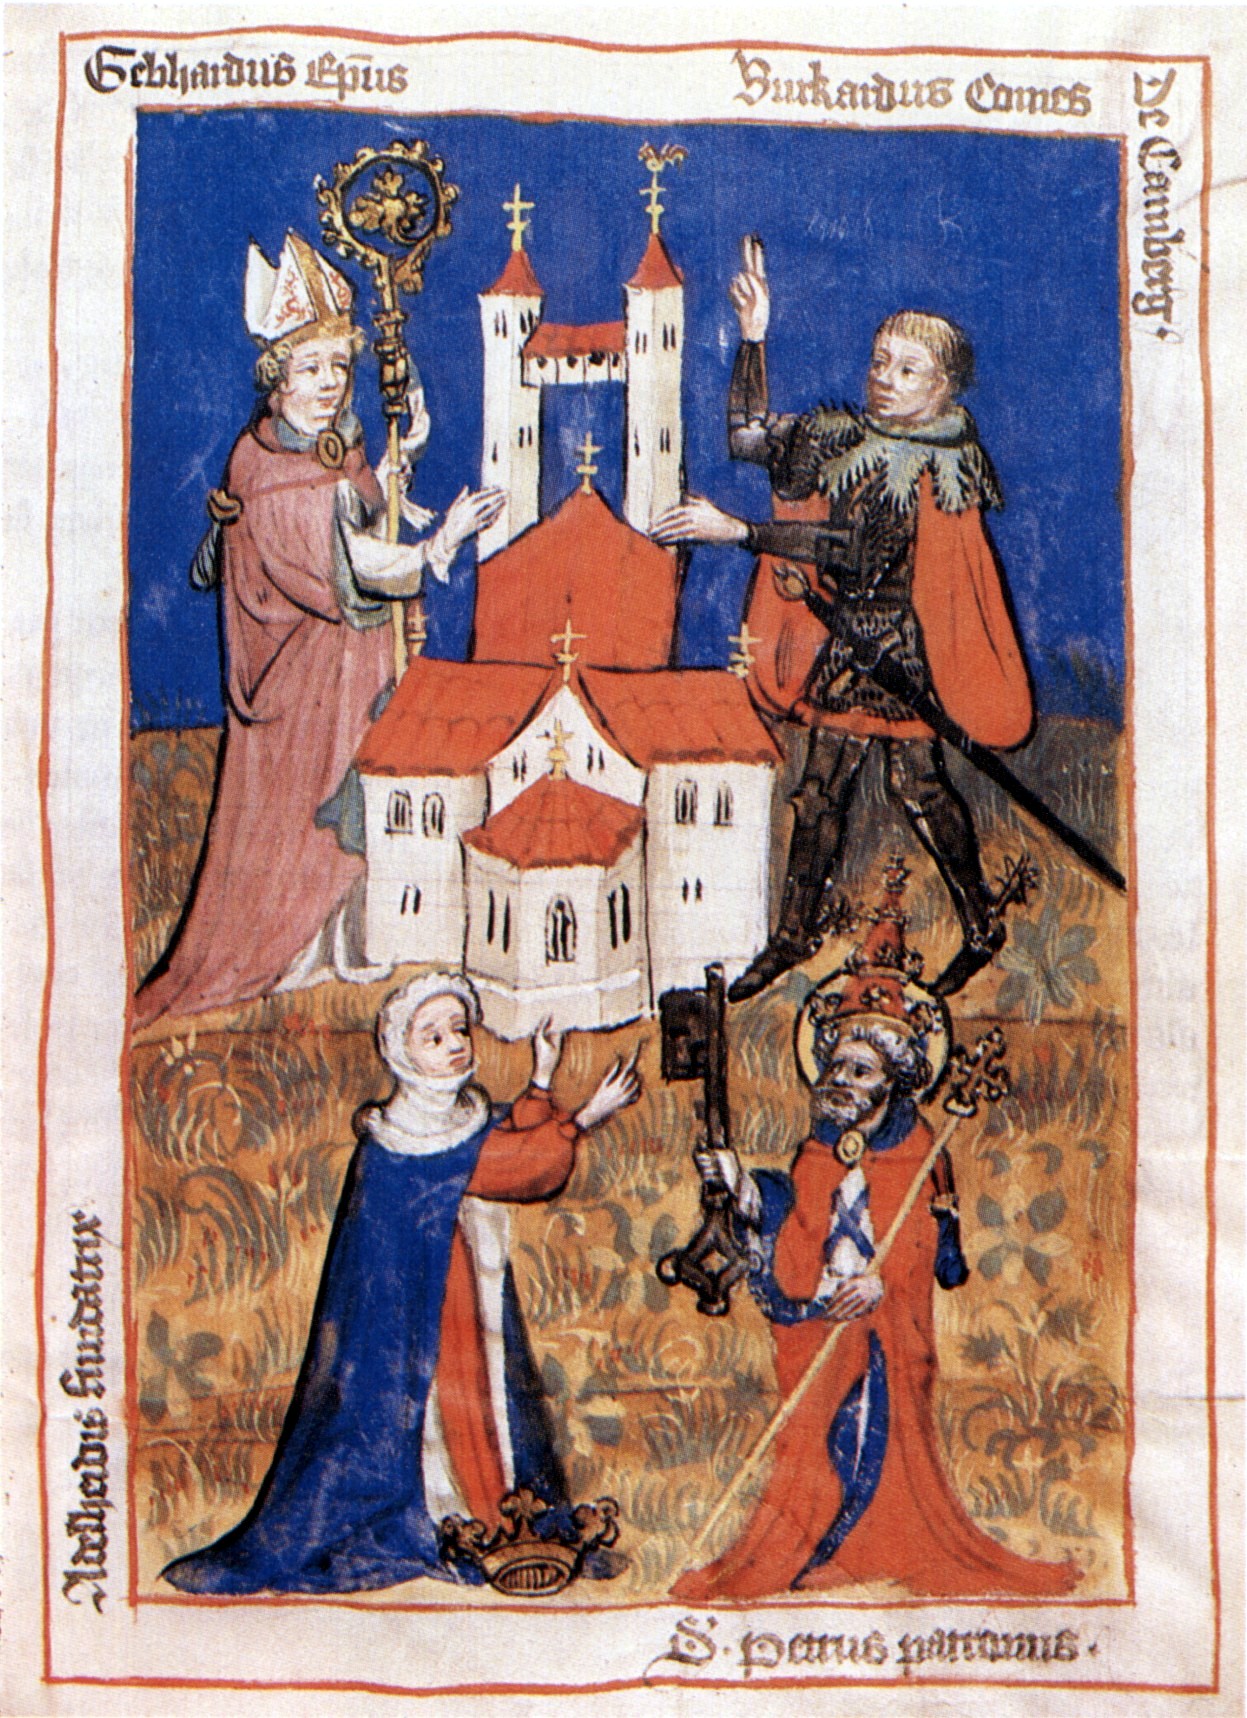 Buchmalerei: Adelheid (links unten), Petrus (rechts unten), Bischofs Gebhard III. von Regensburg (links oben) und Graf Burchard von Comburg (rechts oben), um 1420, aus dem Öhringer Obleybuch, im Hohenlohe-Zentralarchiv im Schloss in Neuenstein bei Heilbronn